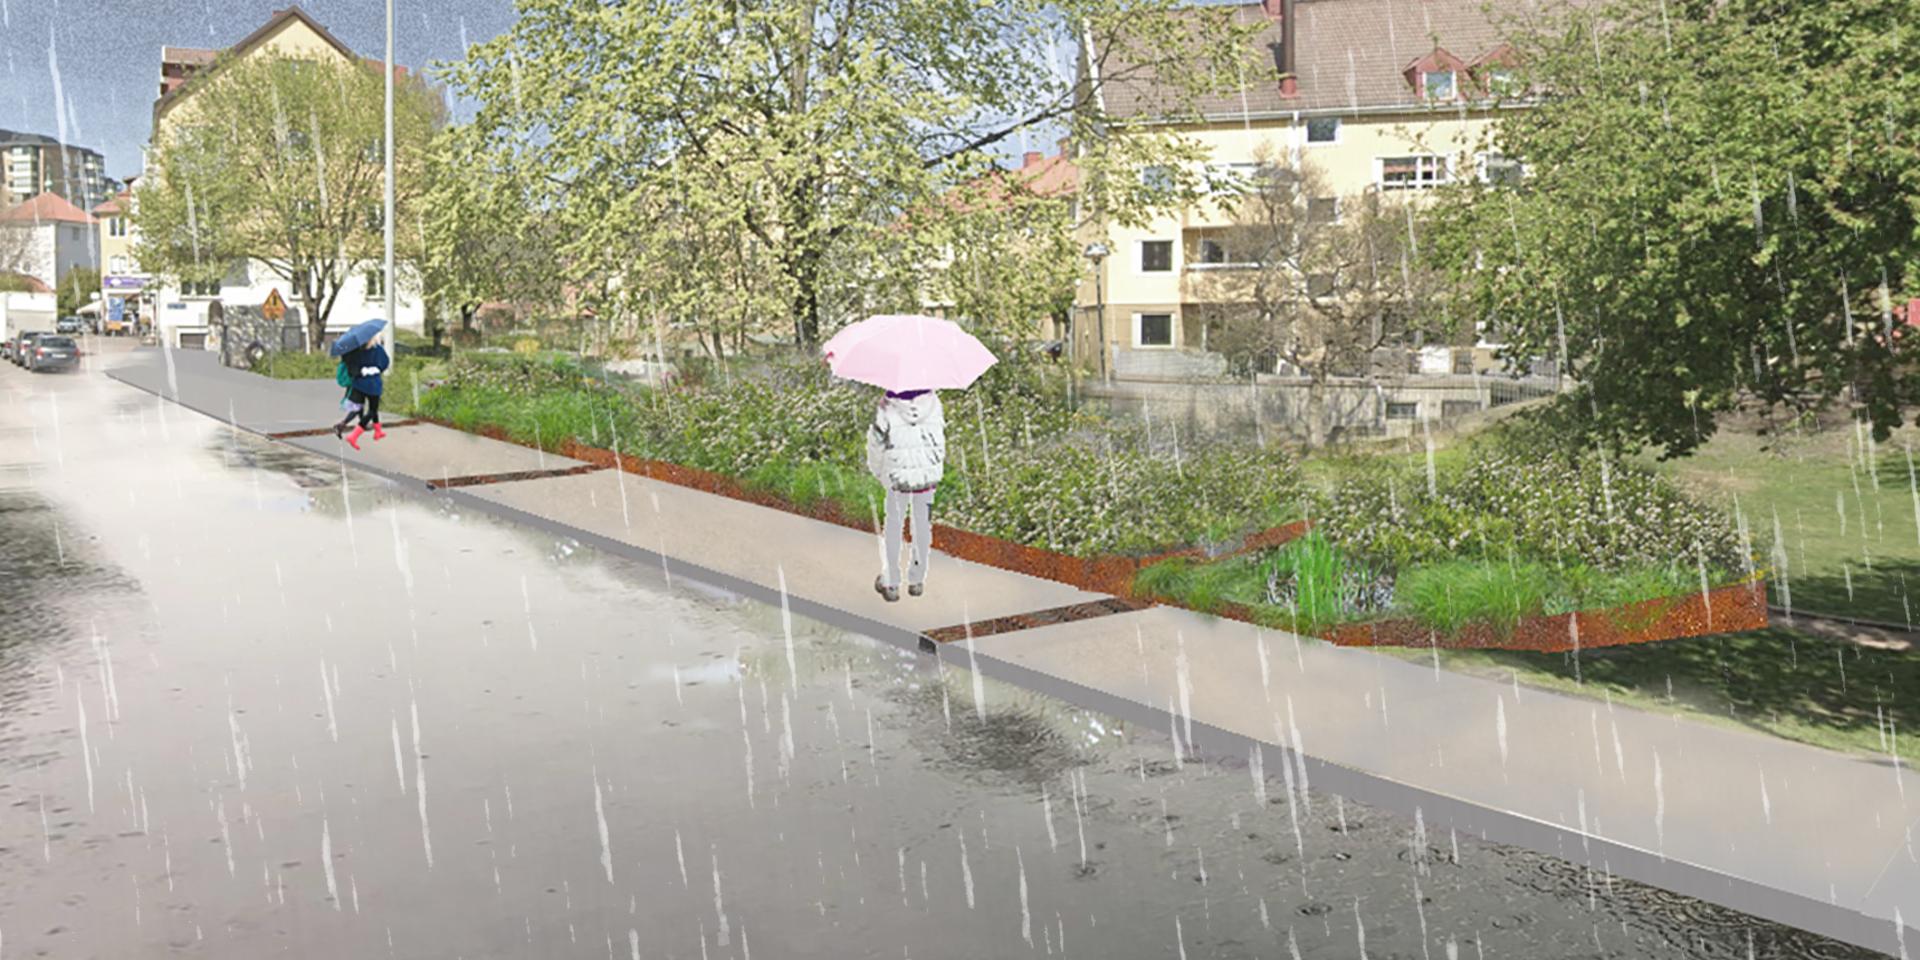 Regnrabatter är en del av åtgärderna för att få bukt med översvämningarna i Brämaregården.